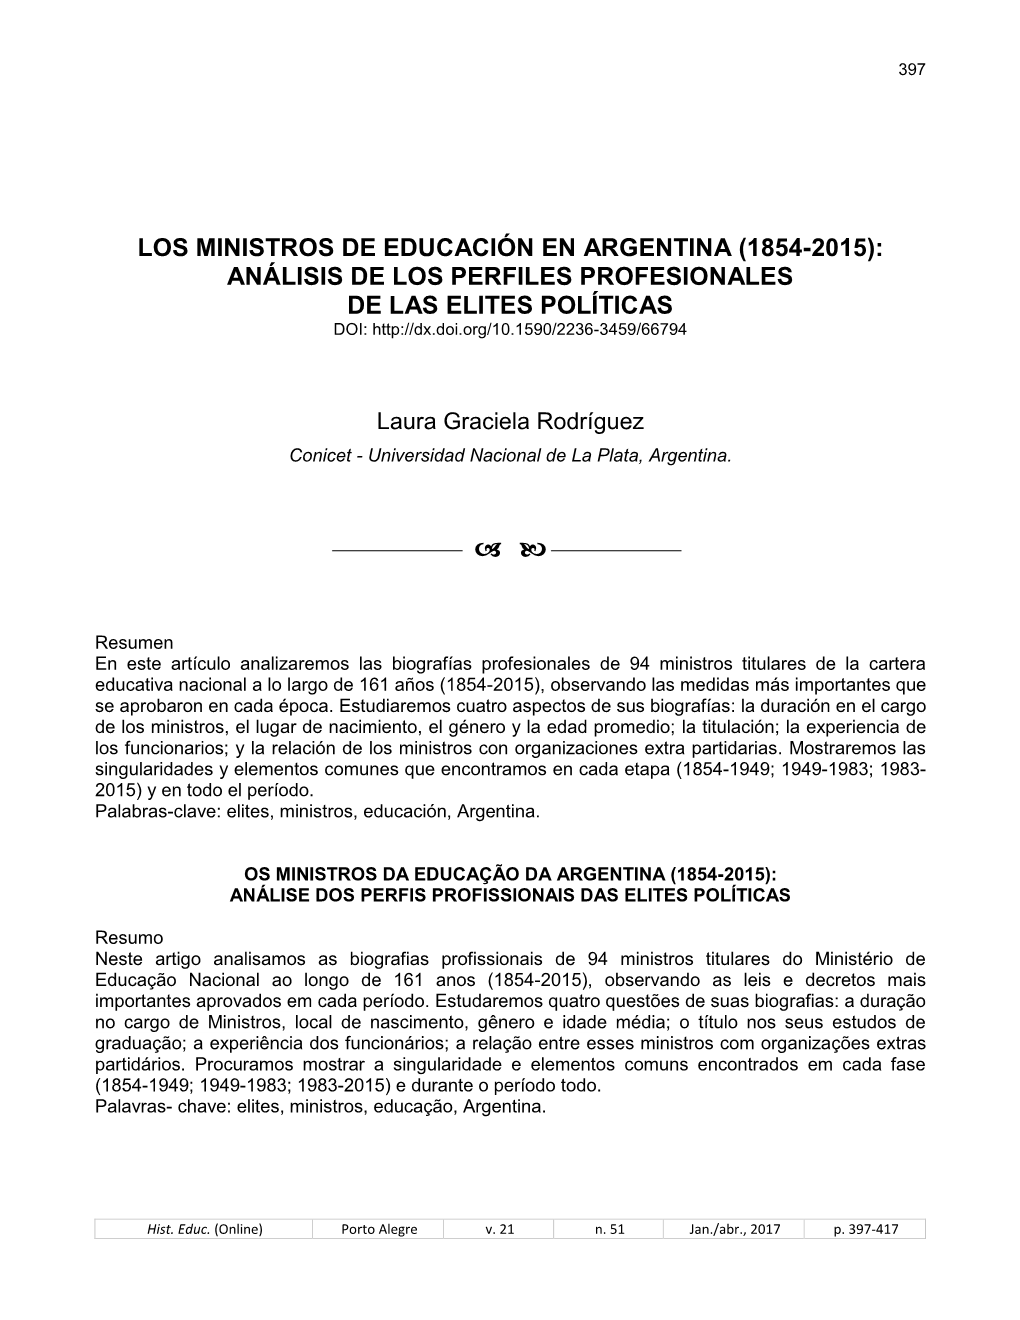 Los Ministros De Educación En Argentina (1854-2015): Análisis De Los Perfiles Profesionales De Las Elites Políticas Doi